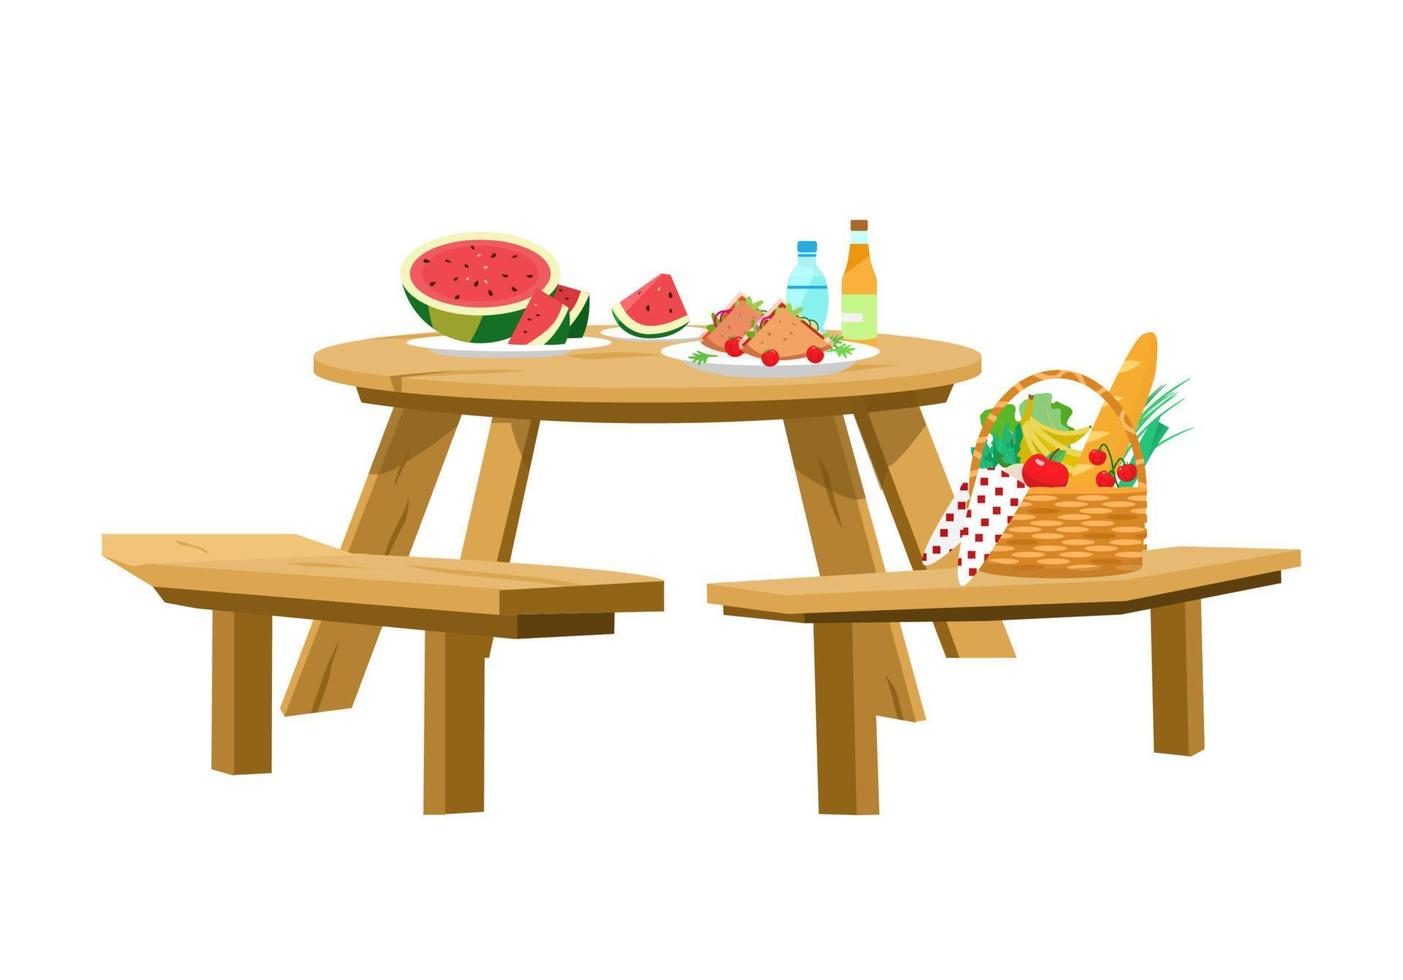 illustrazione vettoriale del tavolo da picnic servito isolato su bianco. cestino da picnic, anguria a fette, panini, acqua, limonata. tavolo rotondo in legno con panche.